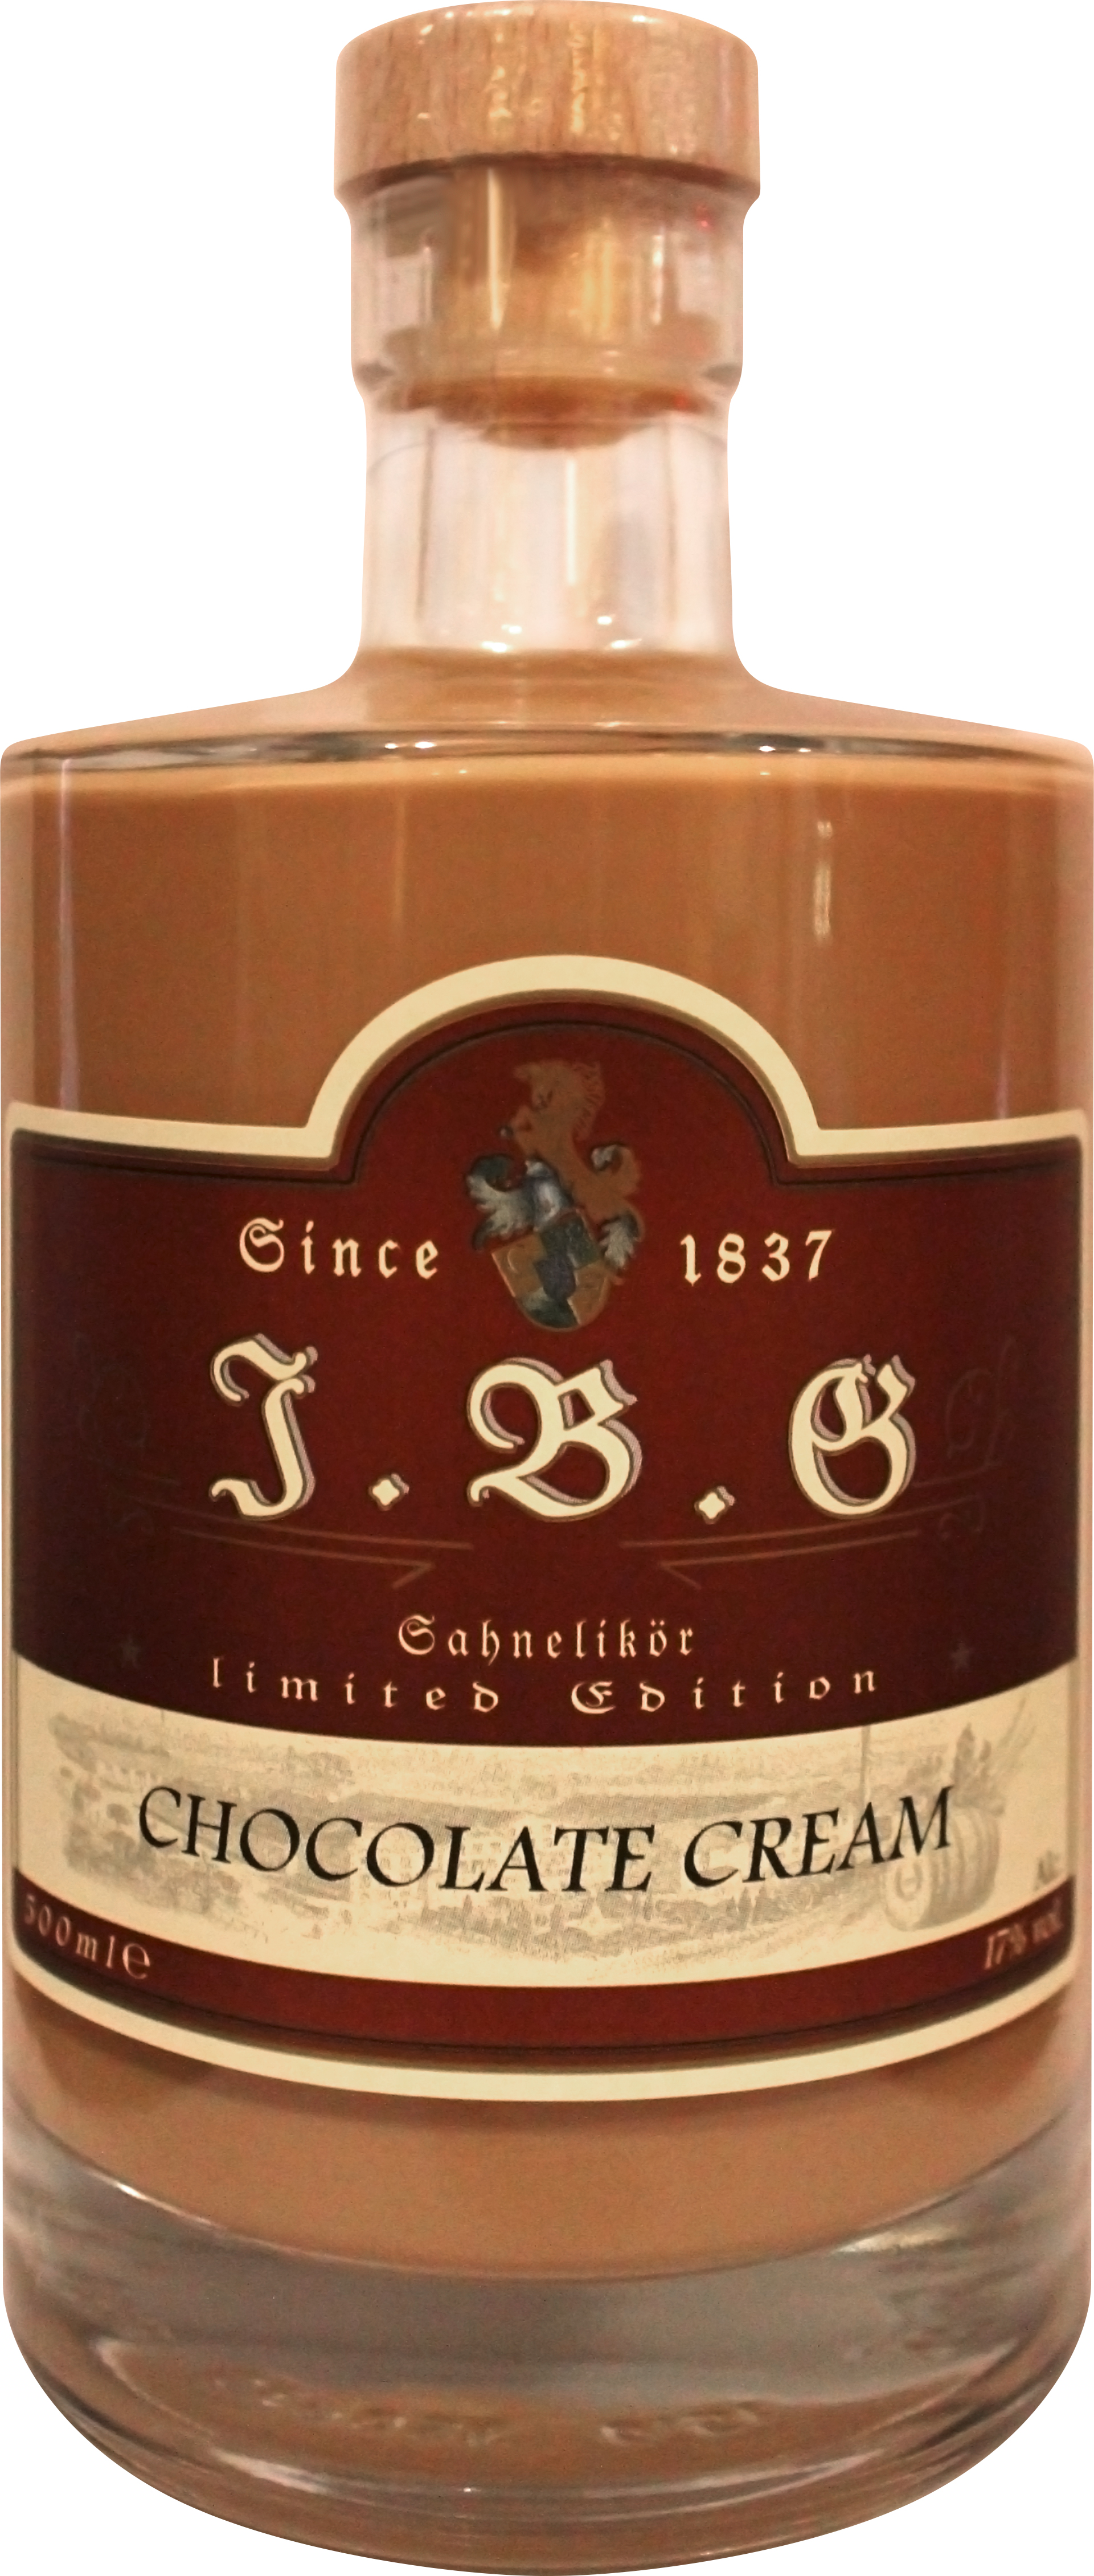 Chocolate Cream Sahnelikör 17%vol., 0,5 ltr. | Gutsbrennerei Geuting